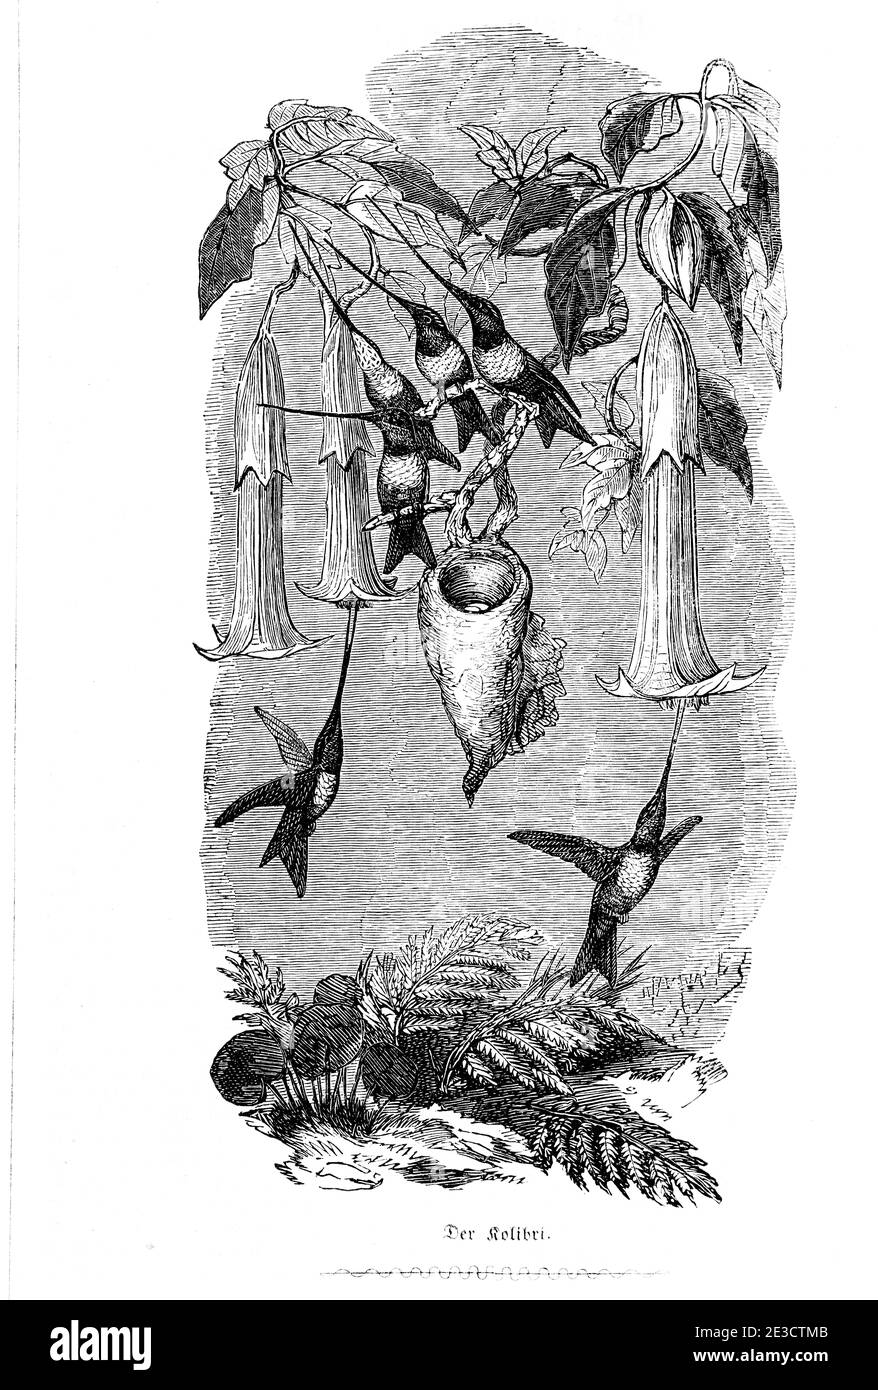 Hummingbees en busca de comida. Calendario Suizo con historias sobre animales extranjeros y motivos correspondientes, San Gallo Suiza 1853 Foto de stock